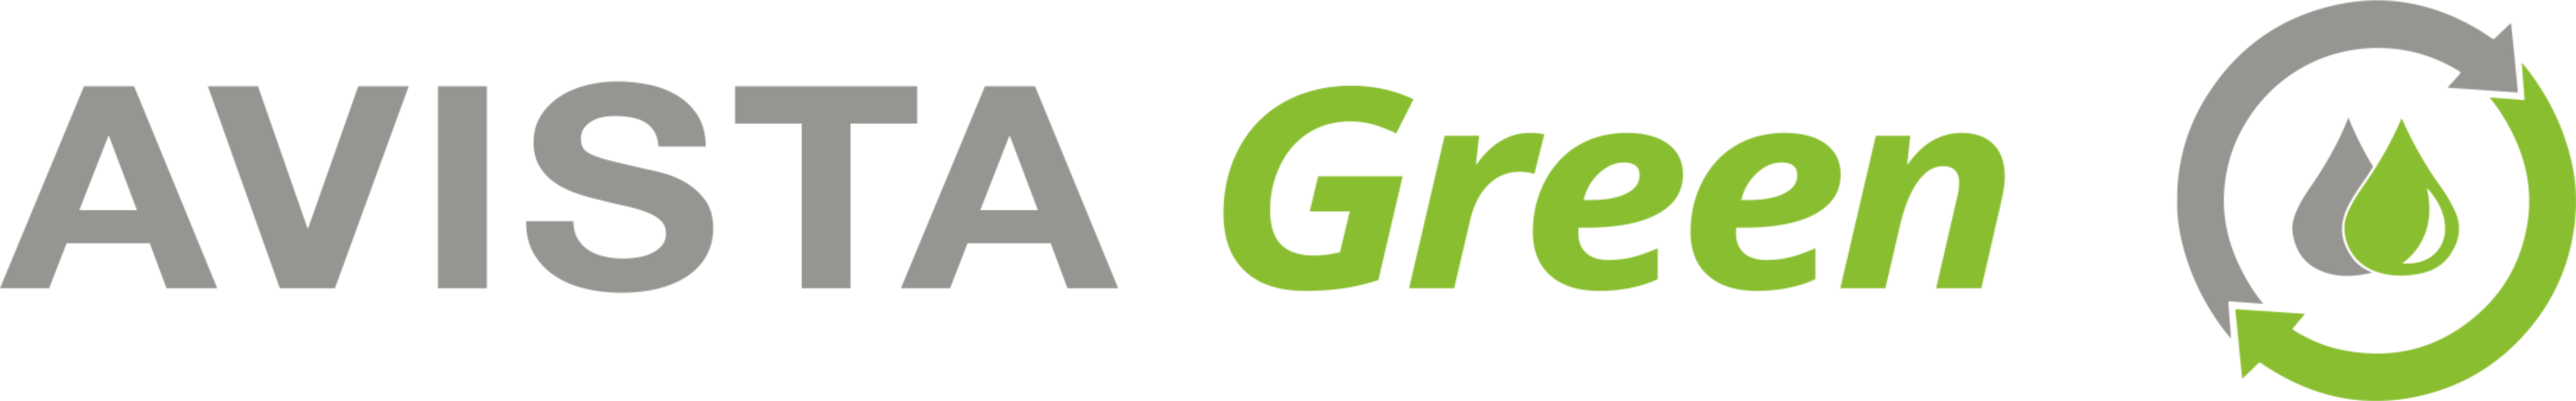 Avista Green logo